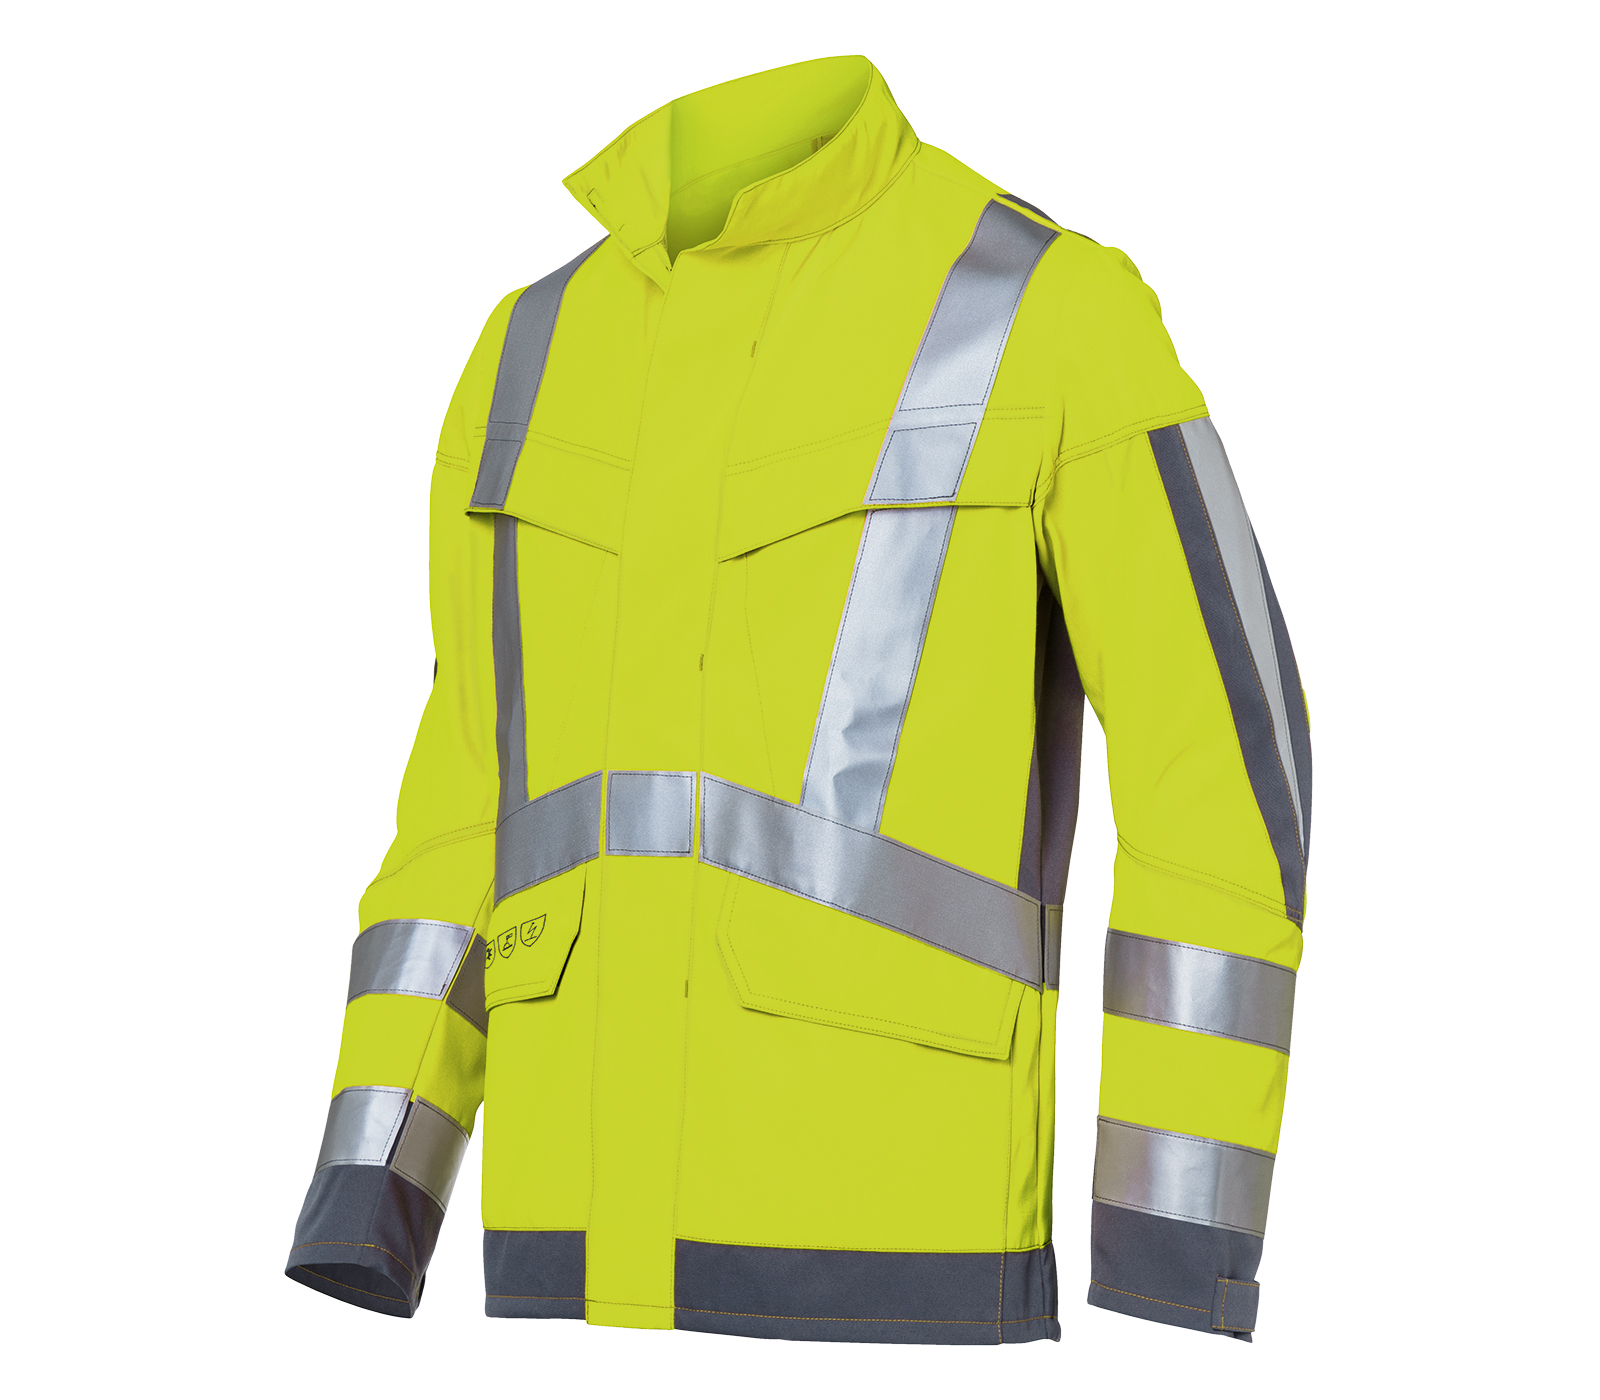 KÜBLER PROTECTIQ HIGH VIS Jacke arc1 PSA 3 | Warnschutzjacken | Jacken |  Arbeitskleidung | Arbeitsschutz | tuulzone